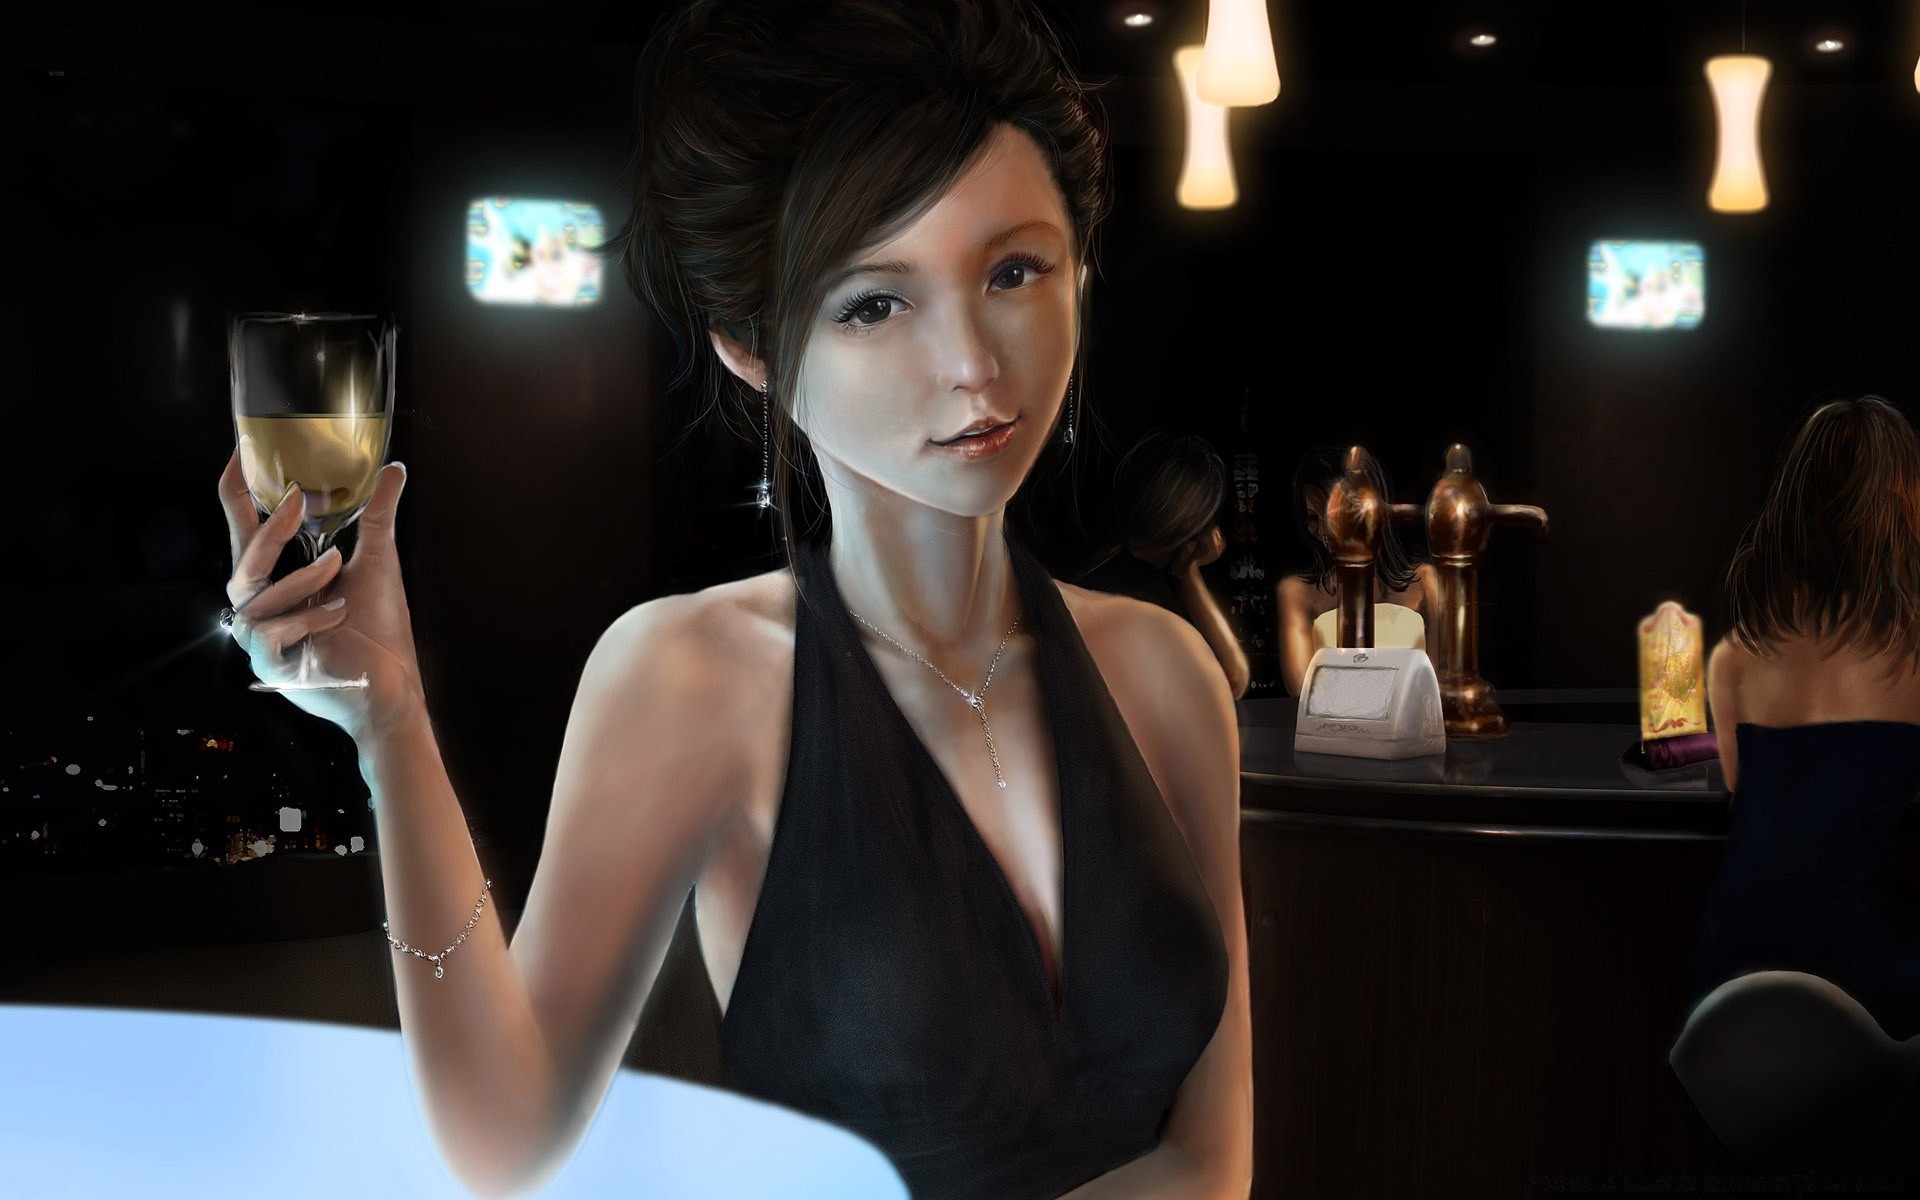 фэнтези женщина в помещении мода бар вина взрослый бизнес один шампанское пить гламур портрет